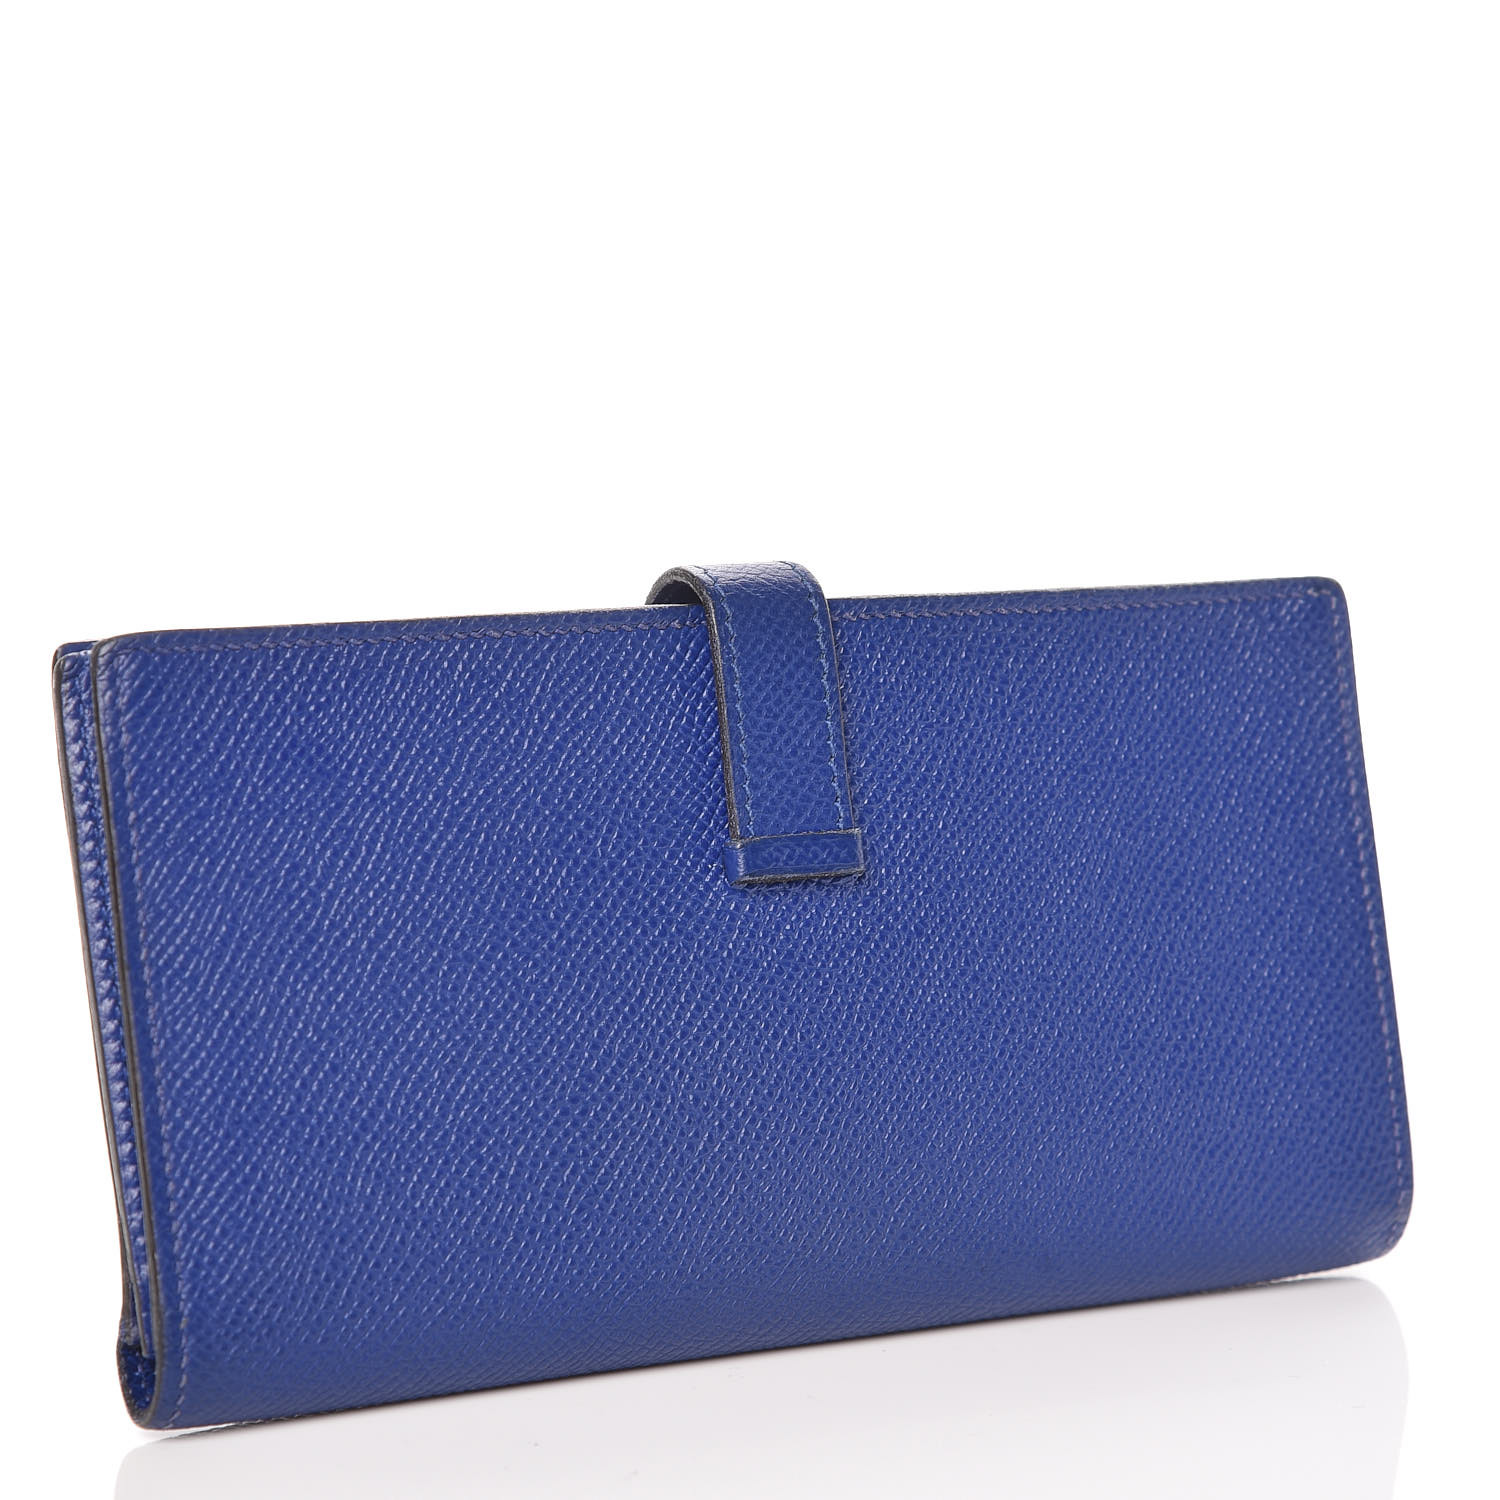 HERMES Epsom Bearn Gusset Wallet Bleu Electrique 376992 | FASHIONPHILE